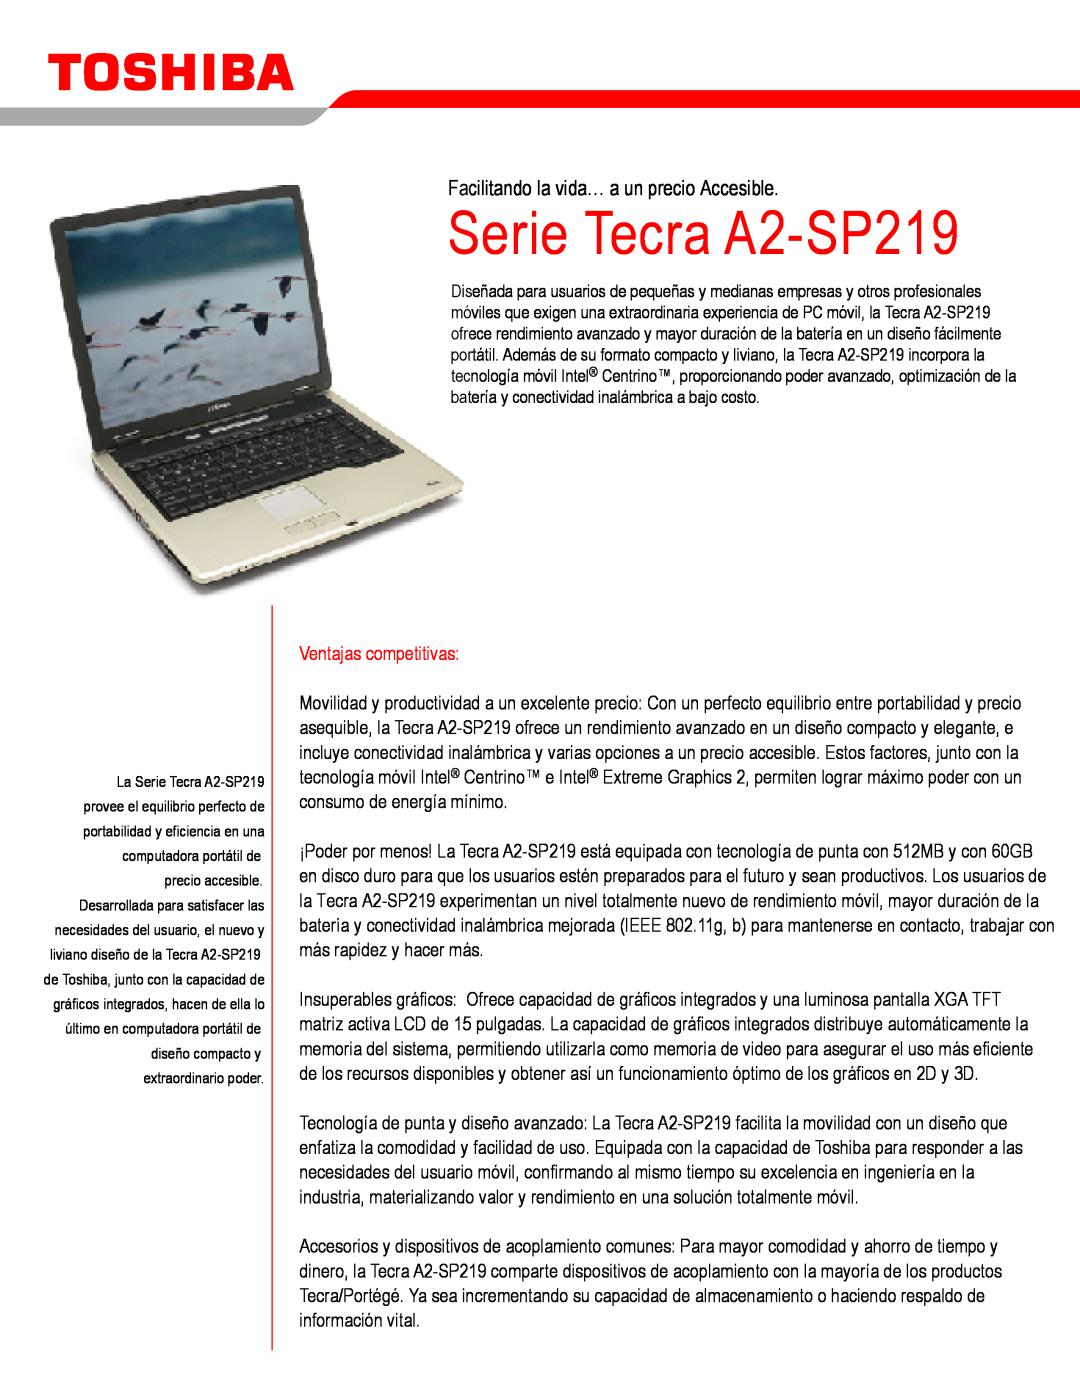 Toshiba manual Serie Tecra A2-SP219, Facilitando la vida… a un precio Accesible, Ventajas competitivas 